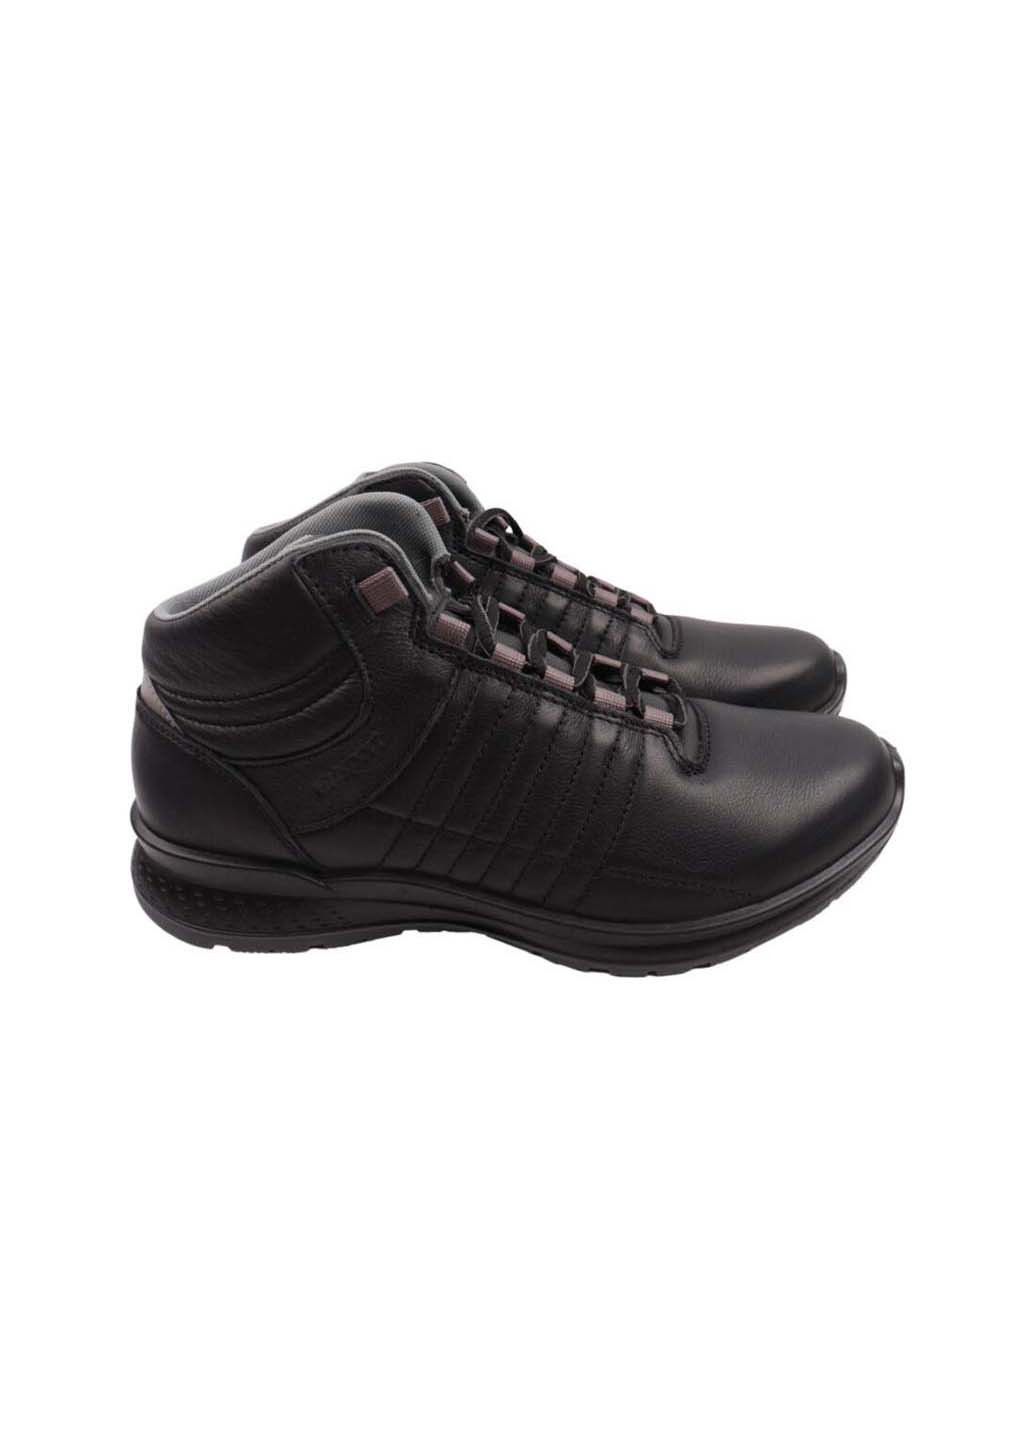 Черные осенние ботинки Grisport